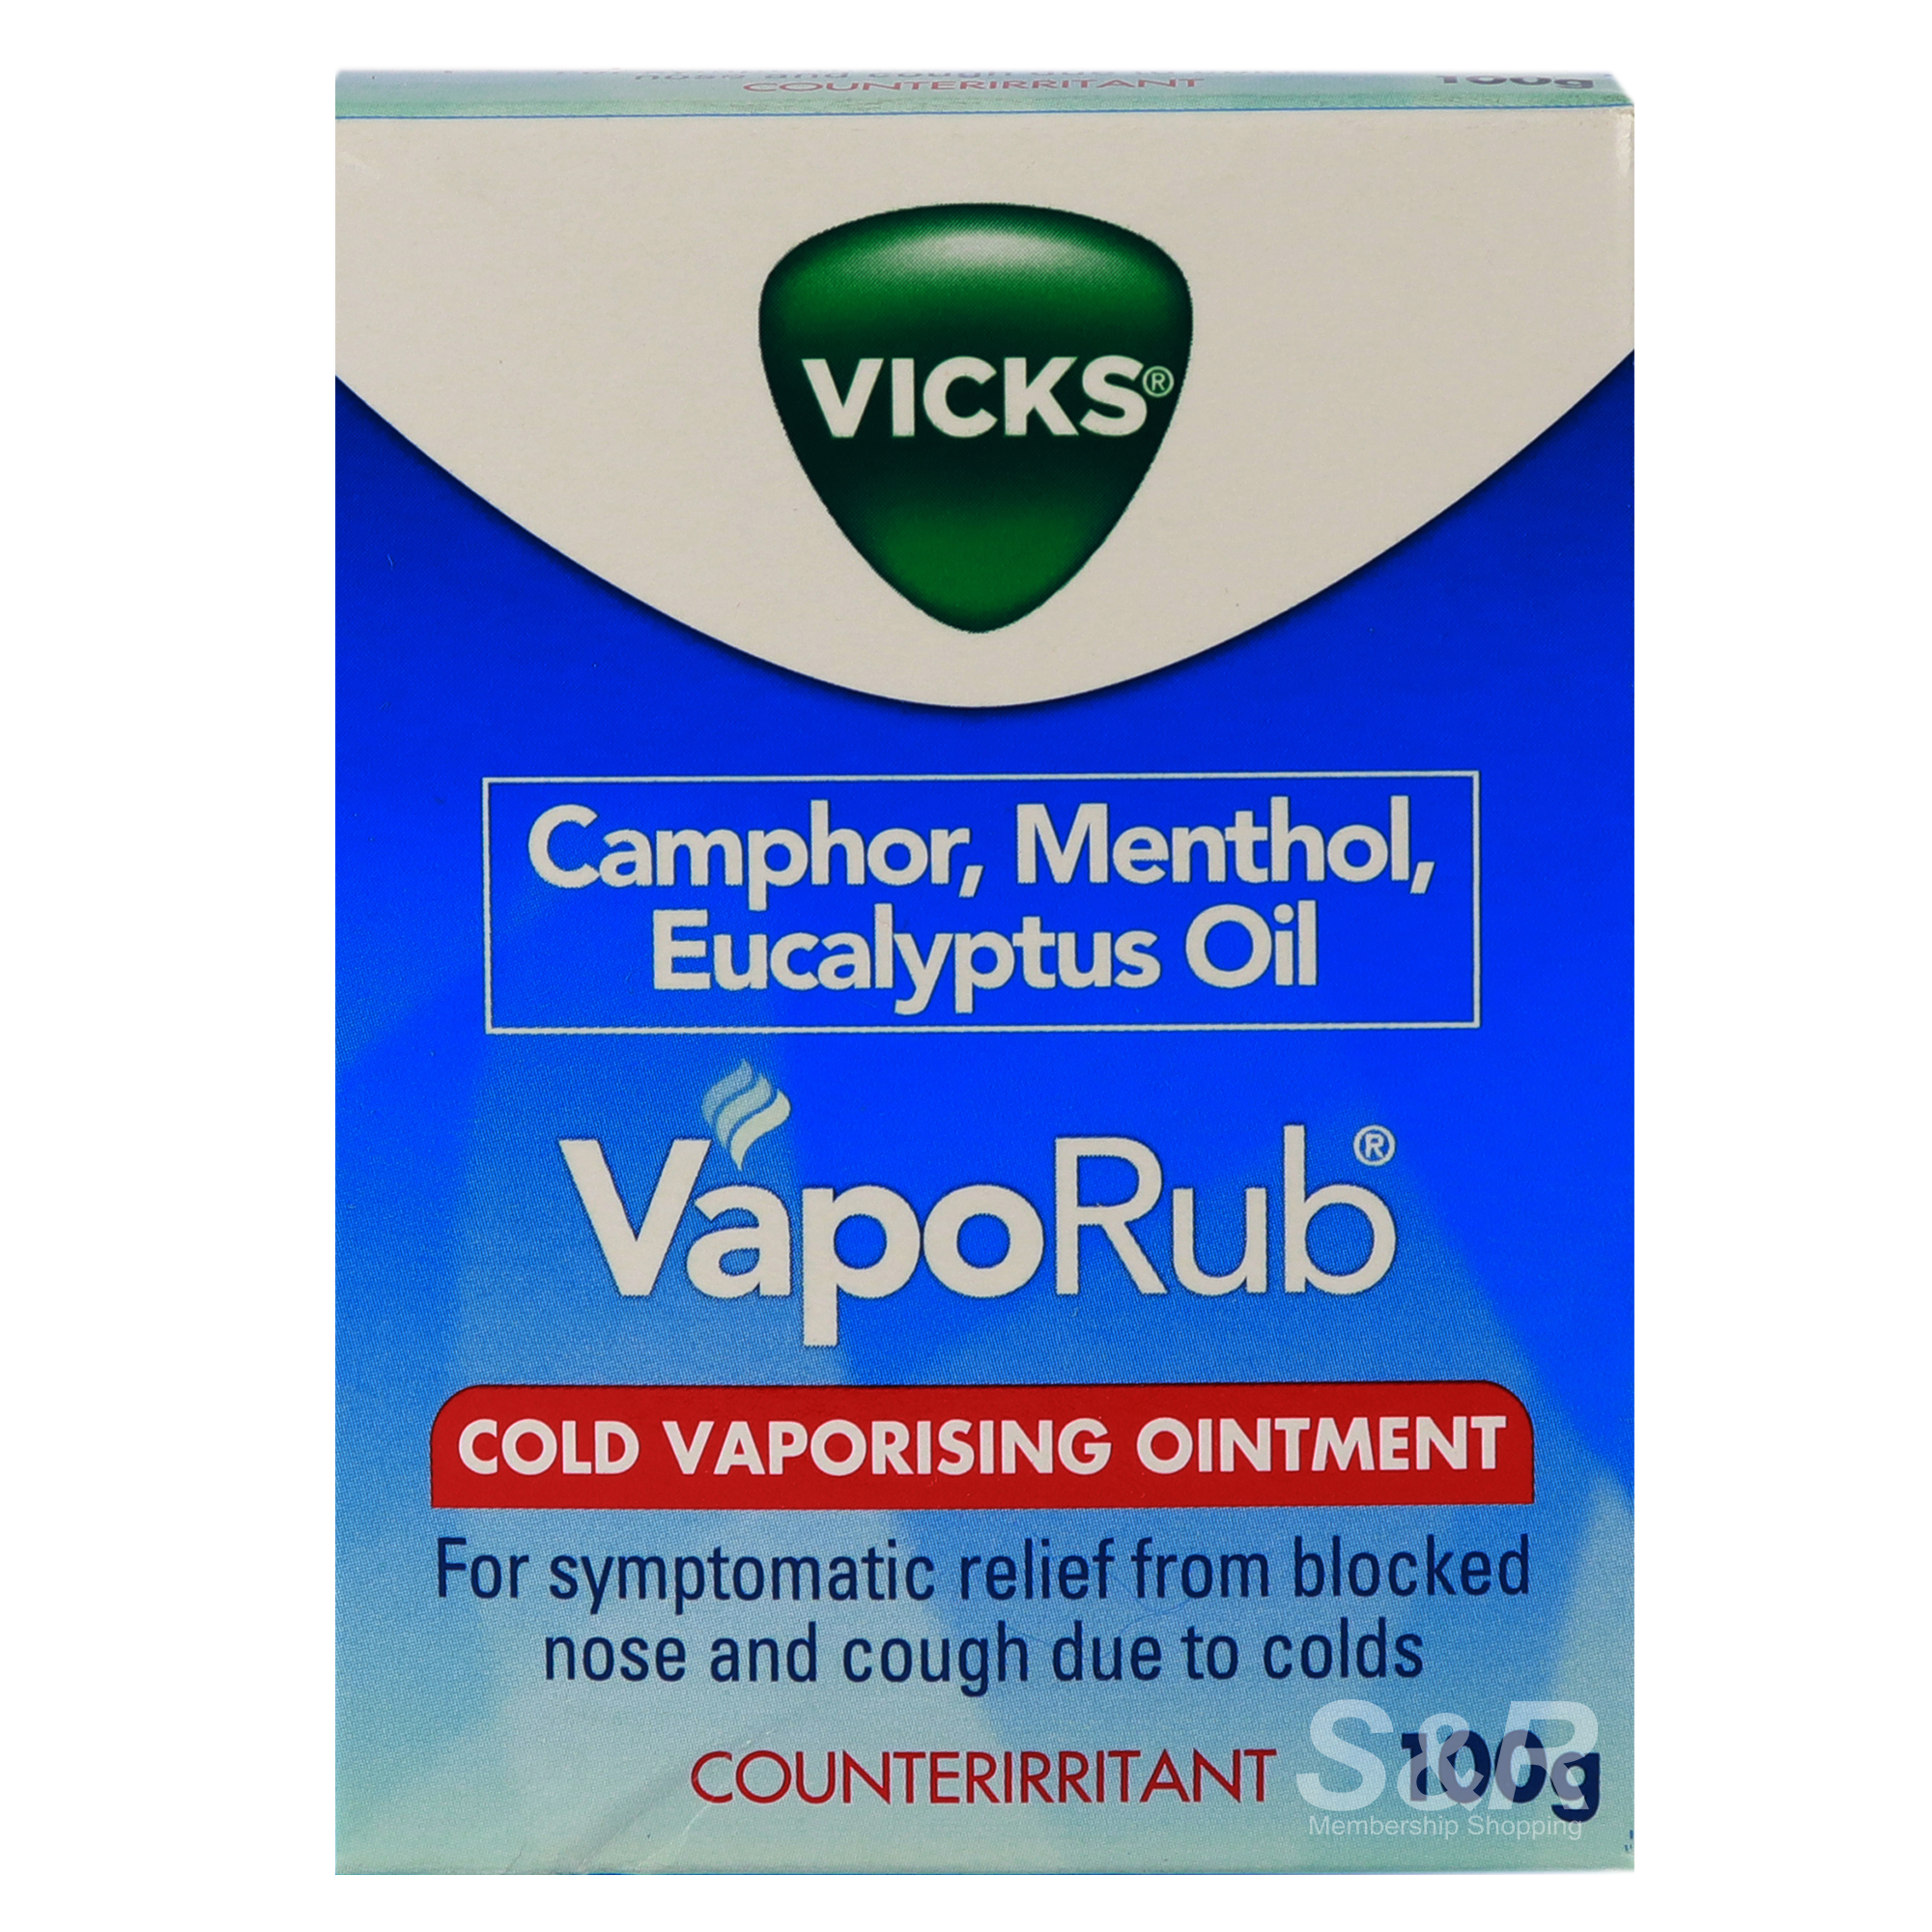 Vicks VapoRub Cold Vaporising Ointment 100g